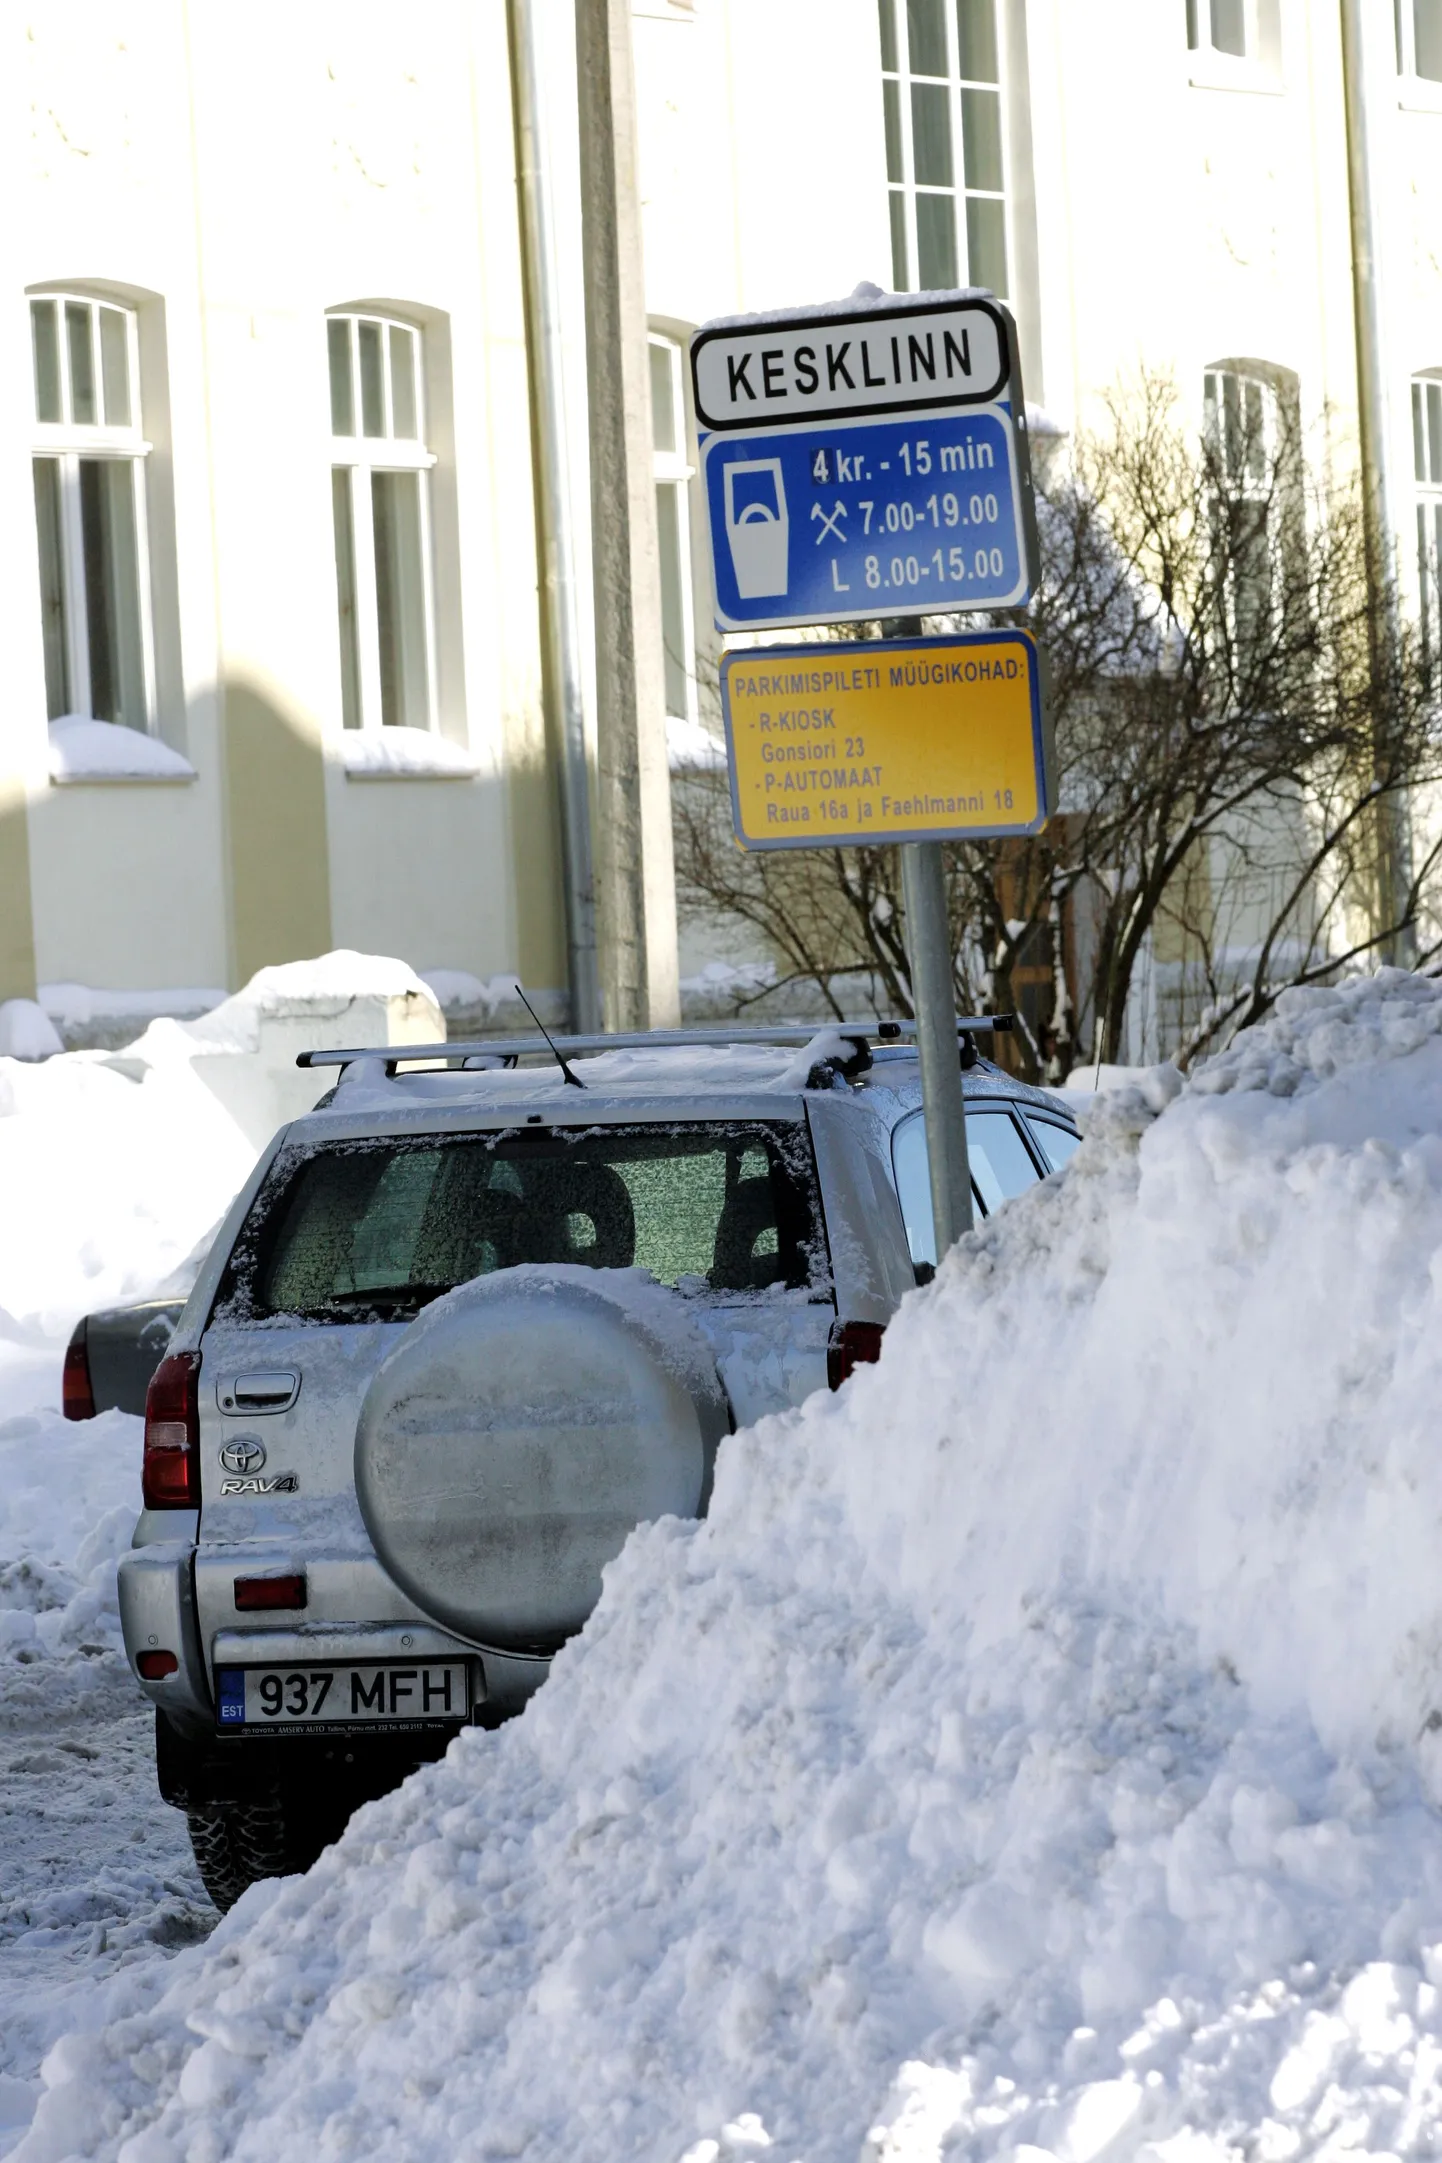 Tasuline parkimisala Tallinna kesklinnas.